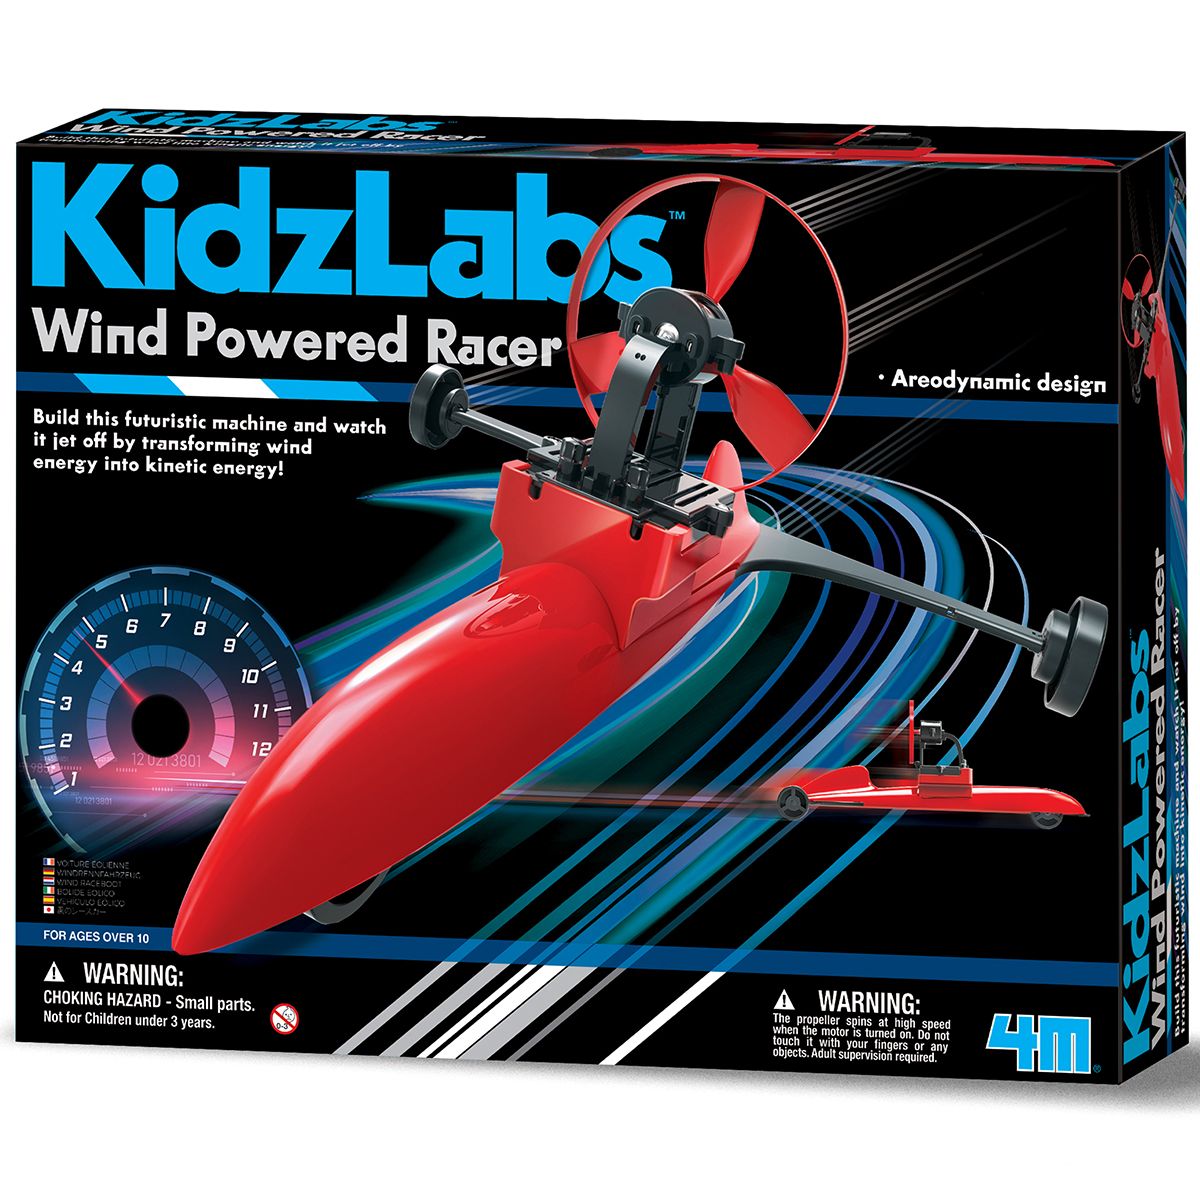 Kidz labs / Wind powered Racer